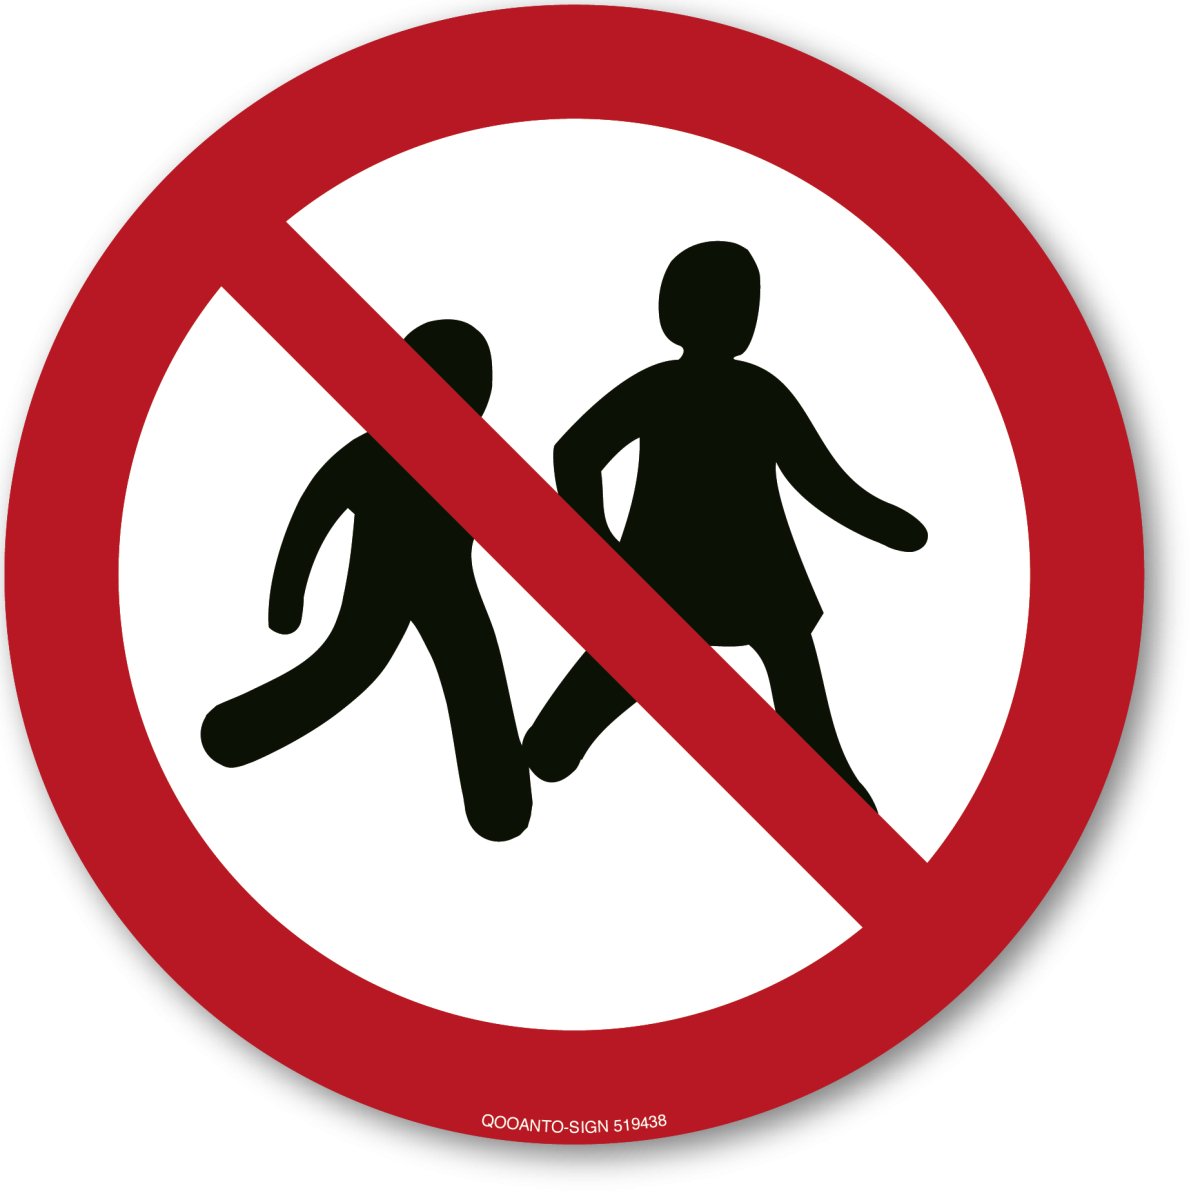 Kinder Verboten, EN ISO 7010, P036 Verbotsschild oder Aufkleber aus Alu-Verbund oder Selbstklebefolie mit UV-Schutz - QOOANTO-SIGN